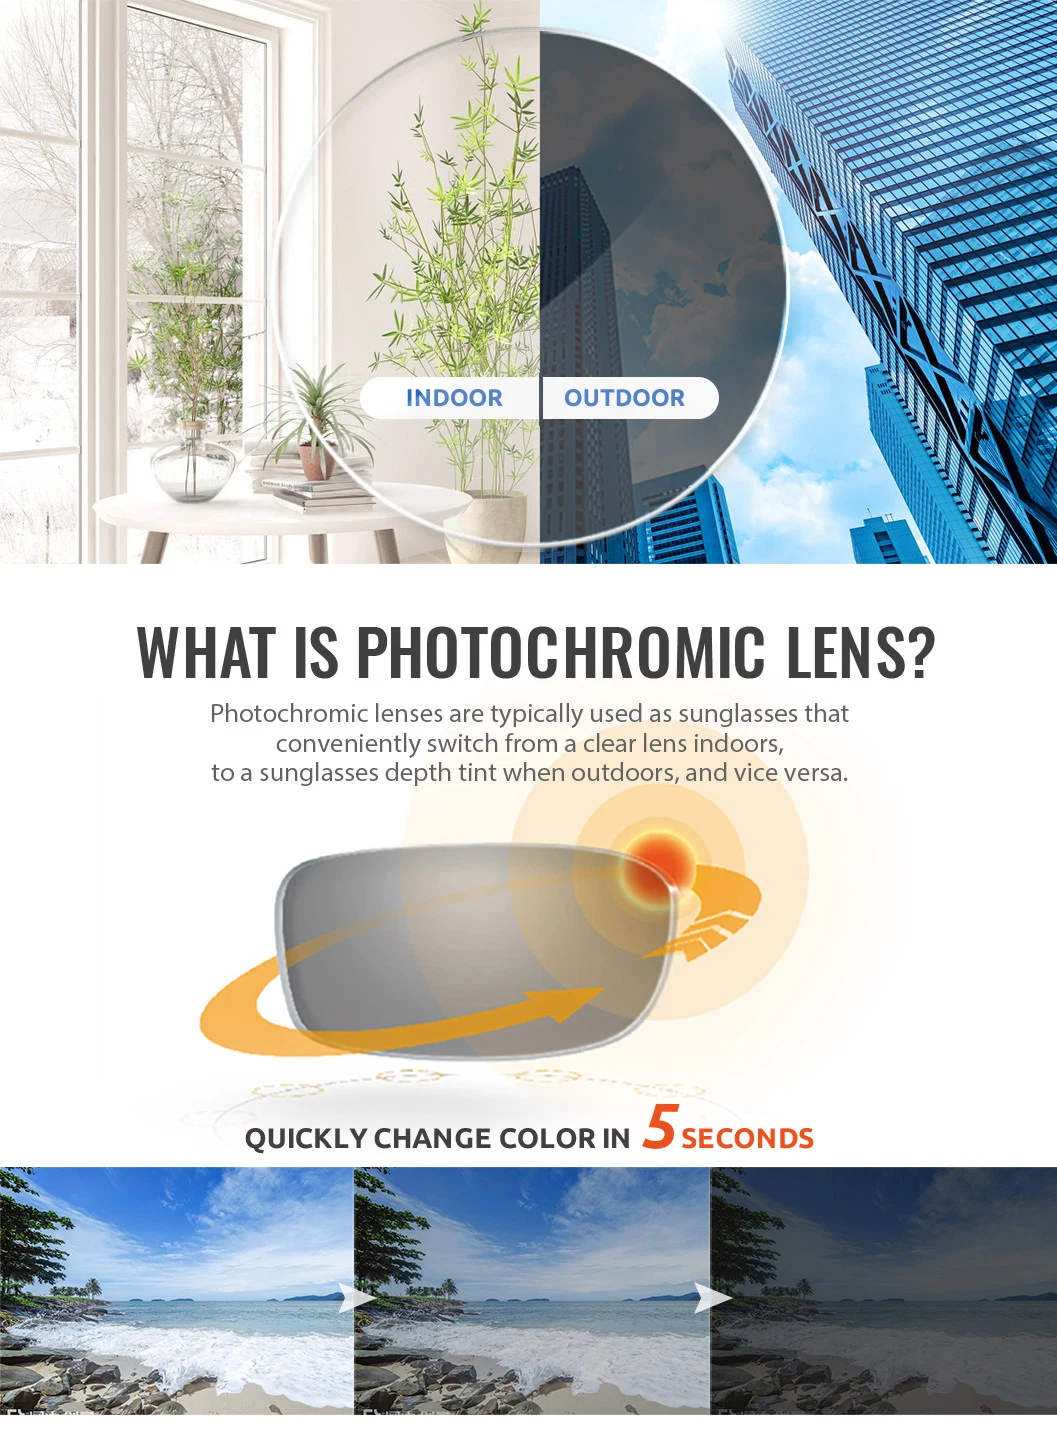 1.56 Photogrey Transition Lenses Progressive Eyeglass Lenses for Far and Near Vision